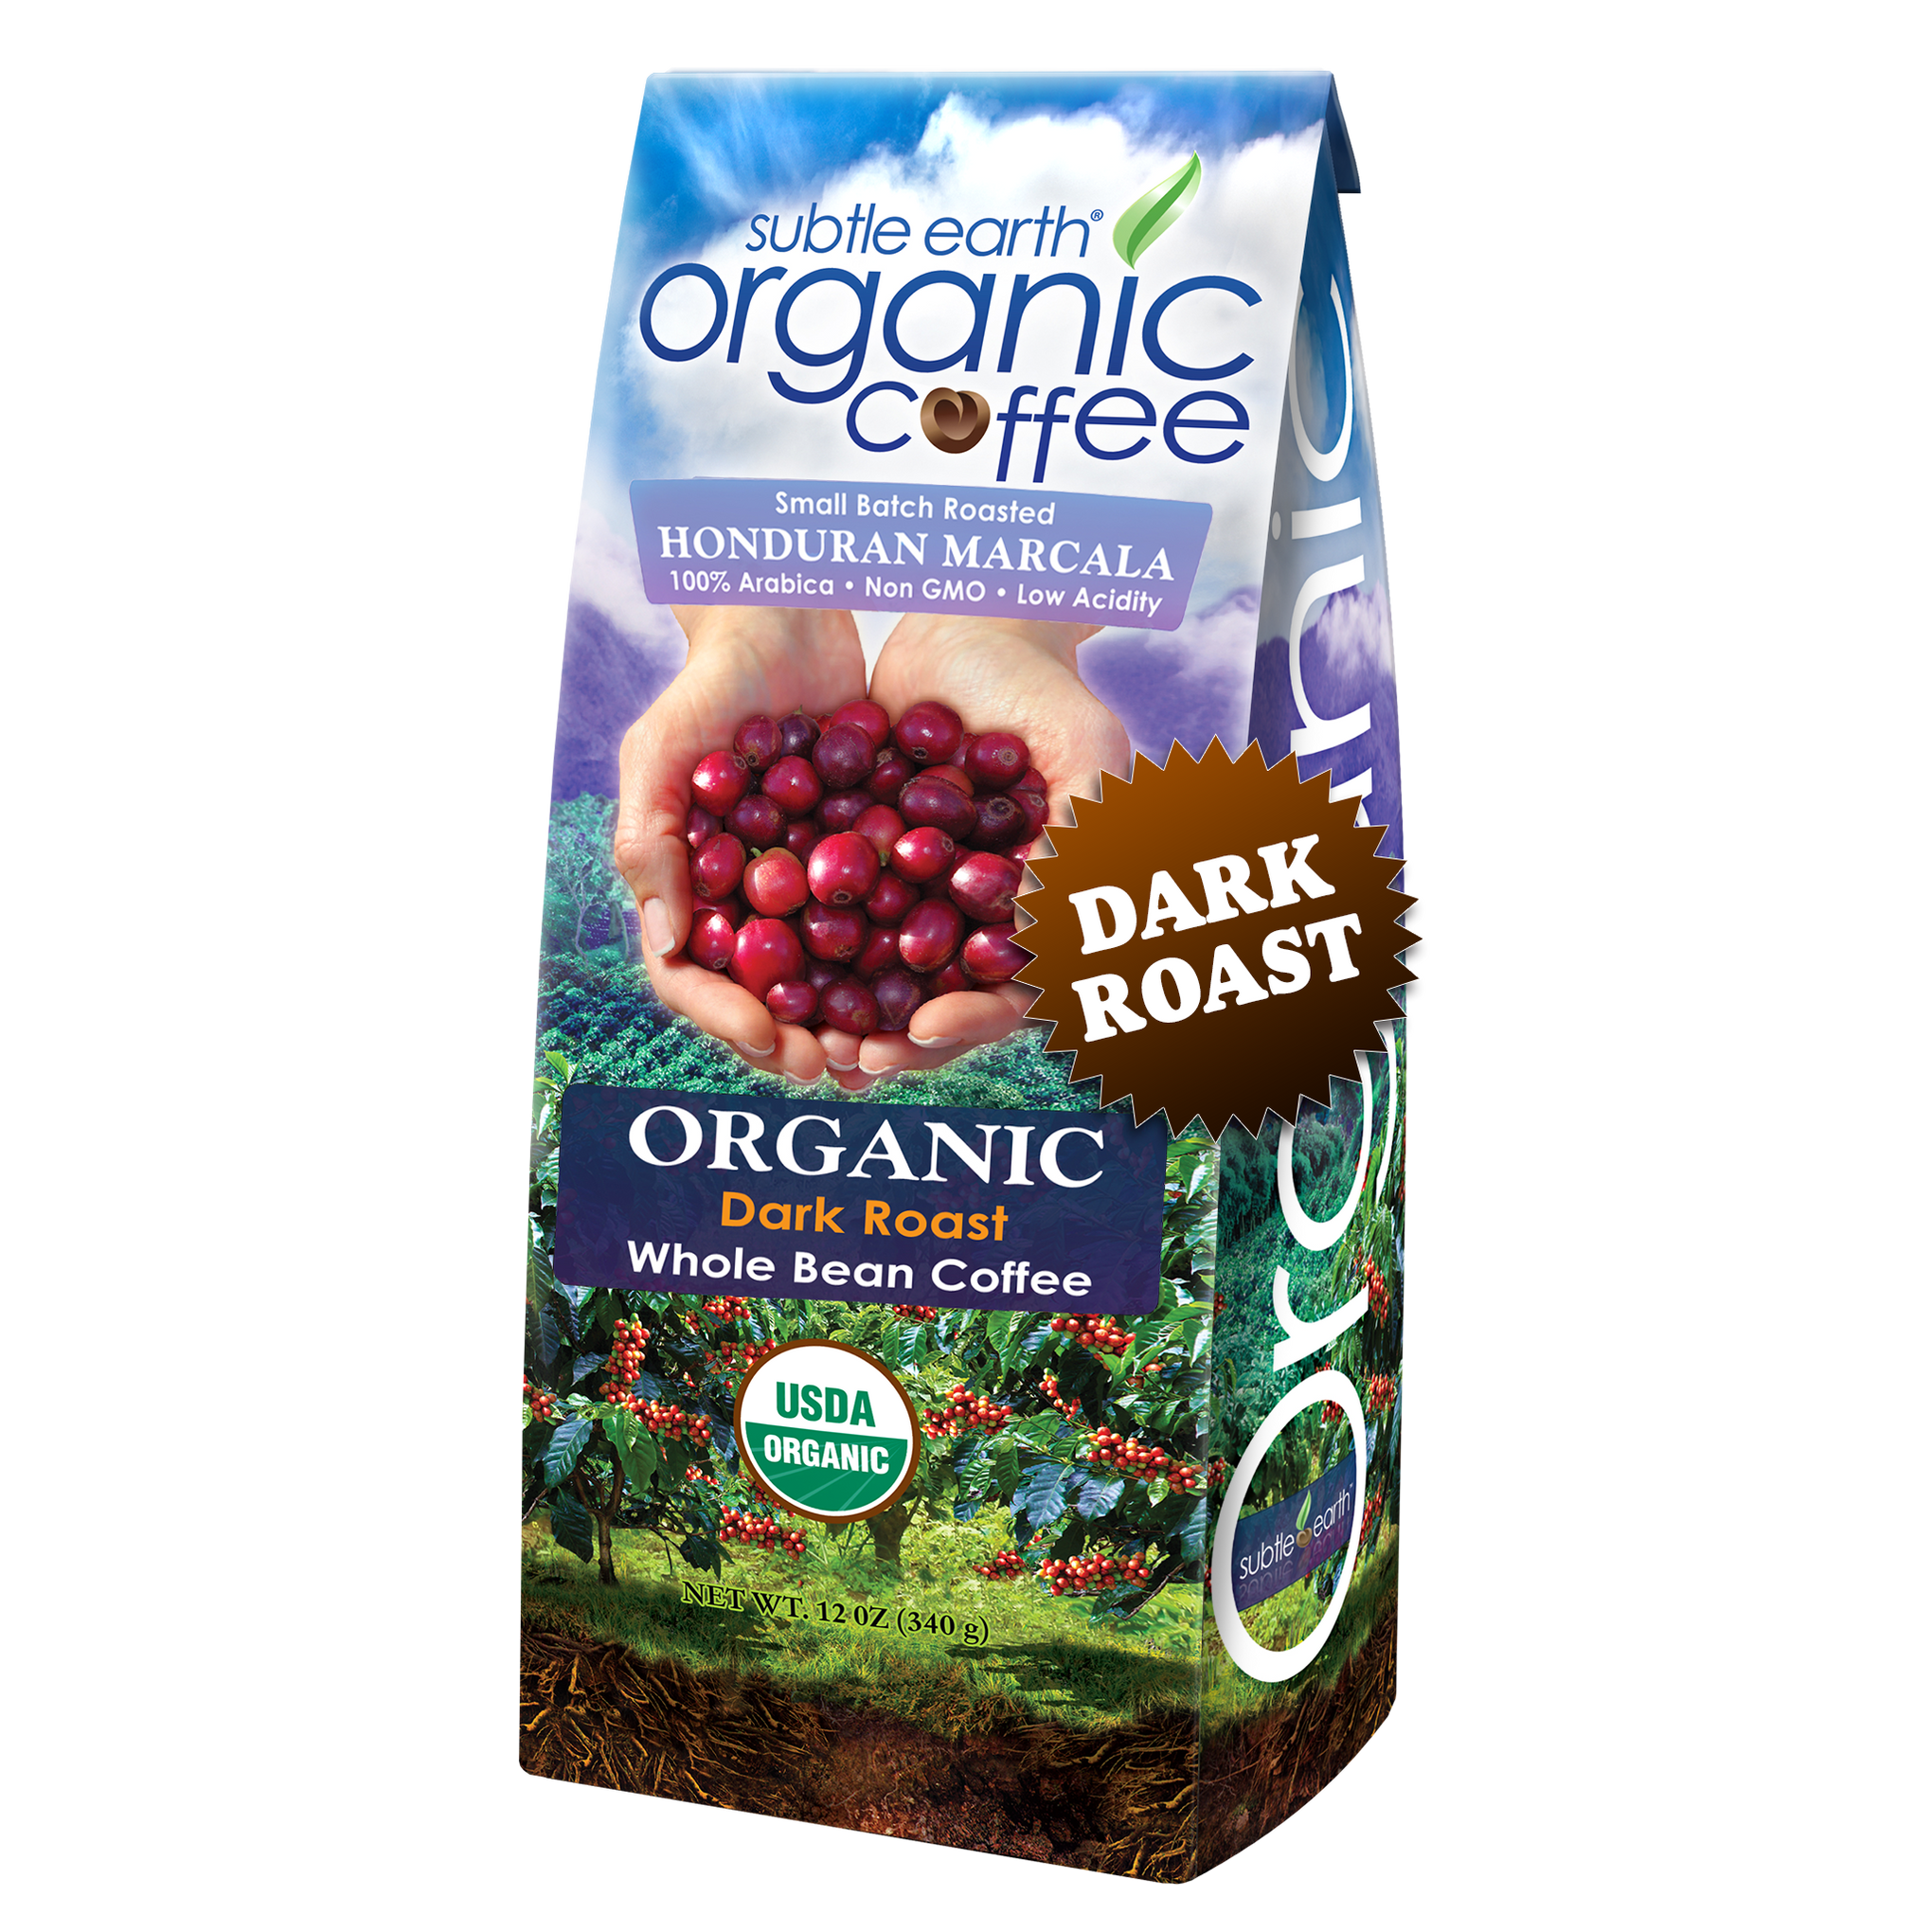 Subtle Earth Organic Darkt Roast Coffee 12 oz Bag hide